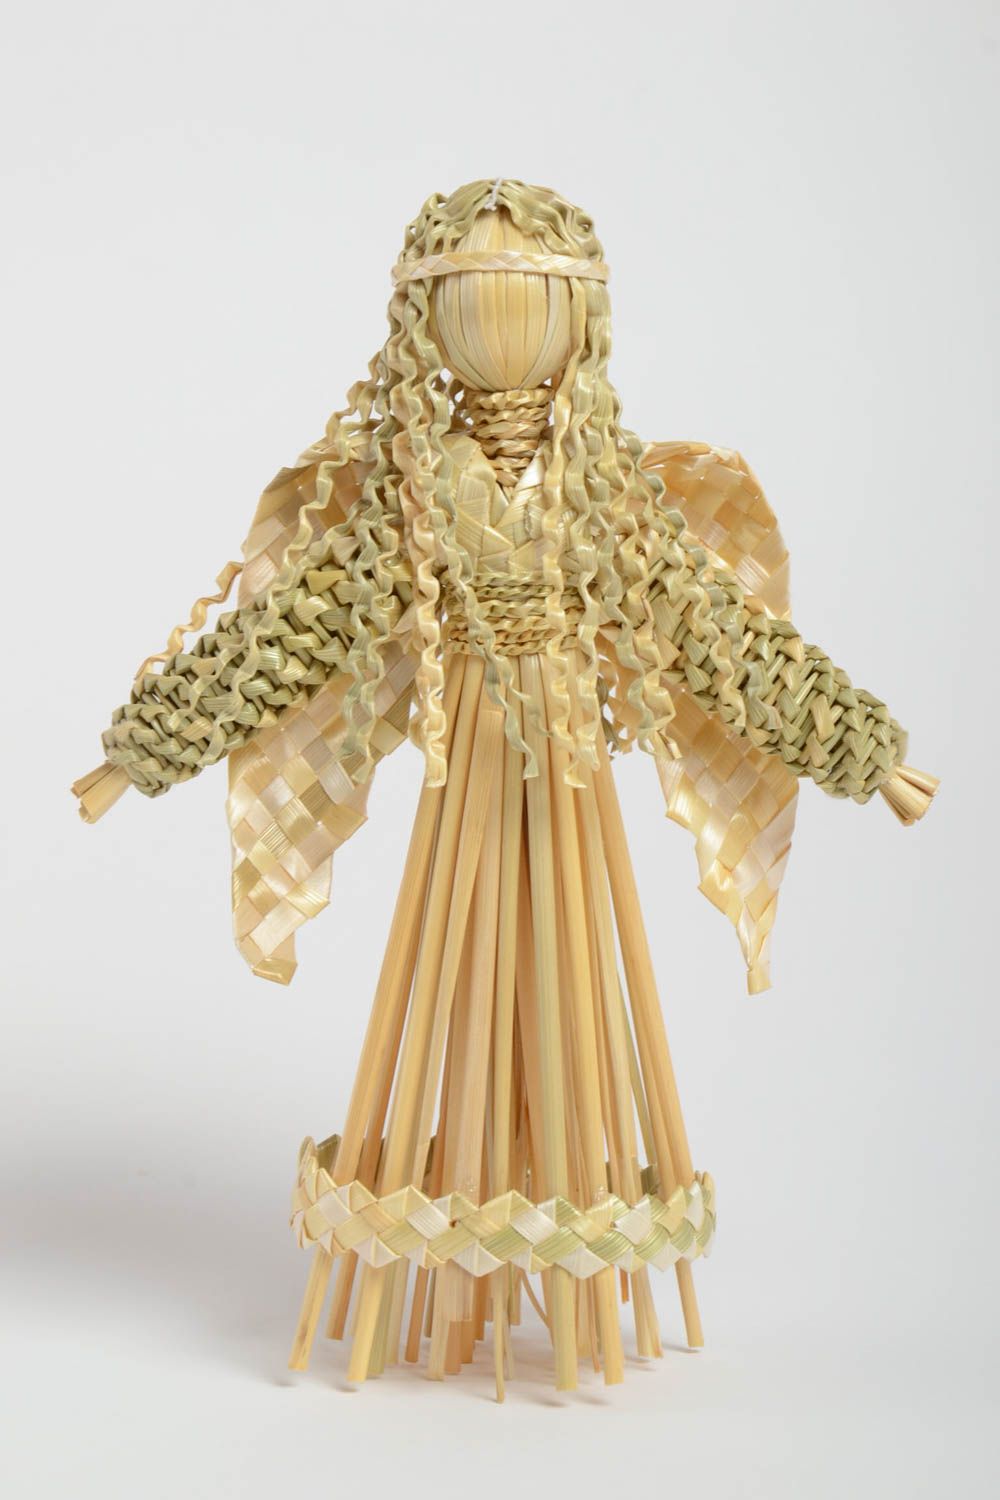 Декоративная игрушка из натуральной соломы ручной работы в виде ангела фото 2